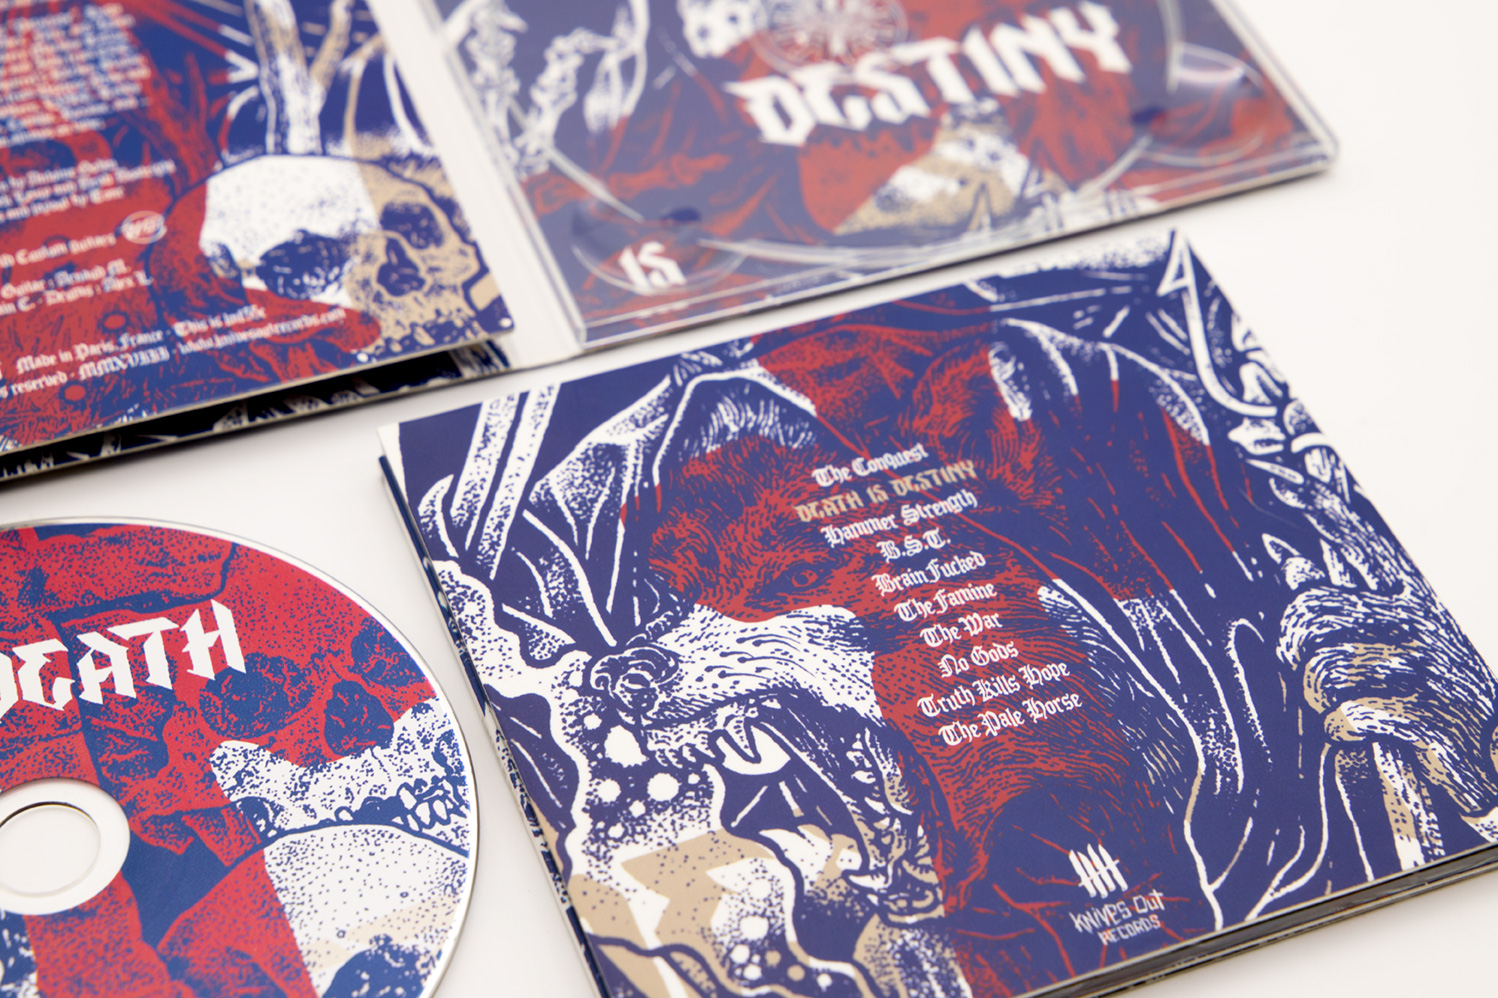 FATASS "Death is Destiny" Digipack CD